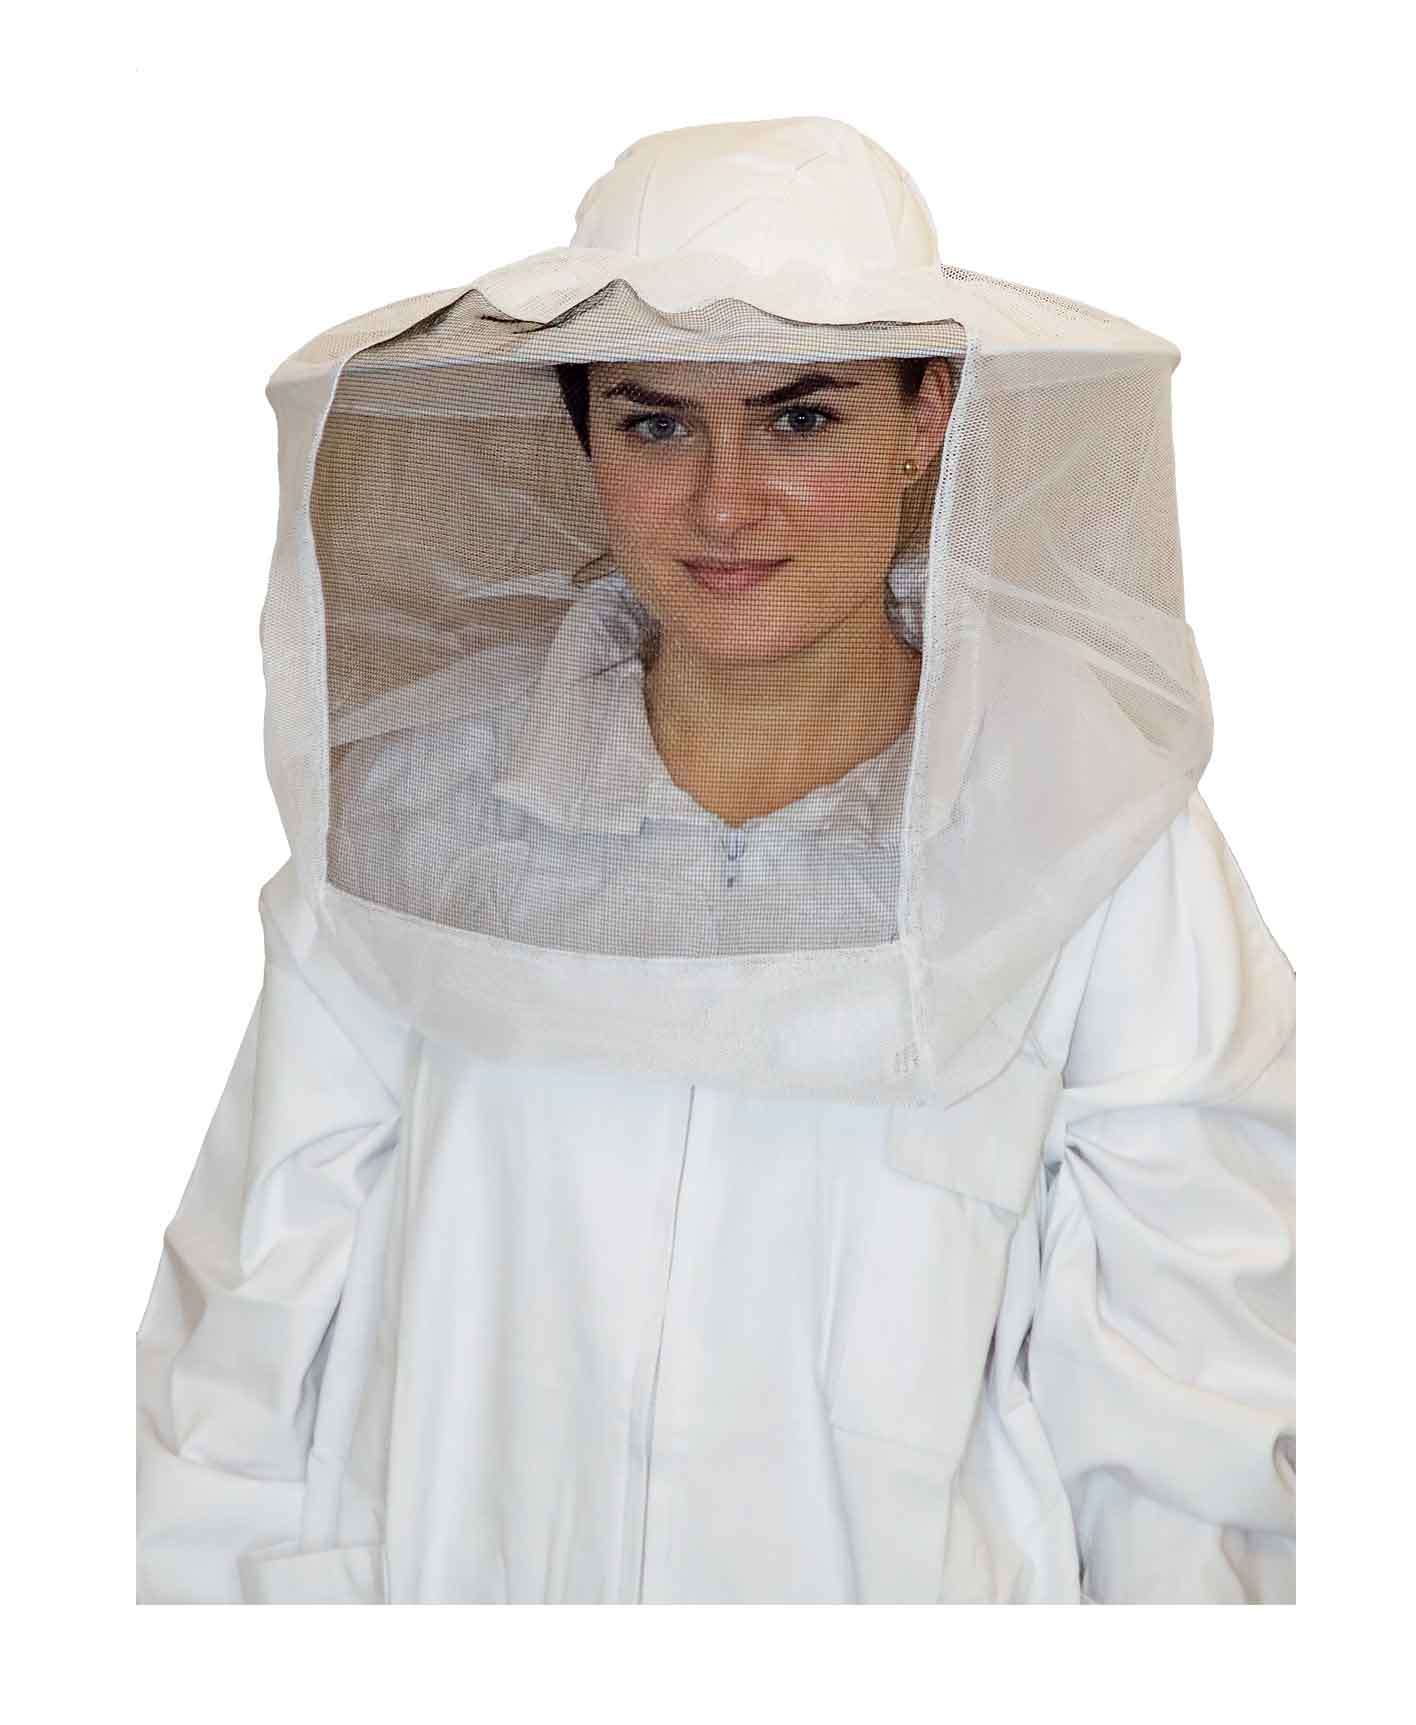 Imker Bienenzüchter Imker Hut Schleier Imkerhaube Bienenschutz Kopfschutz 